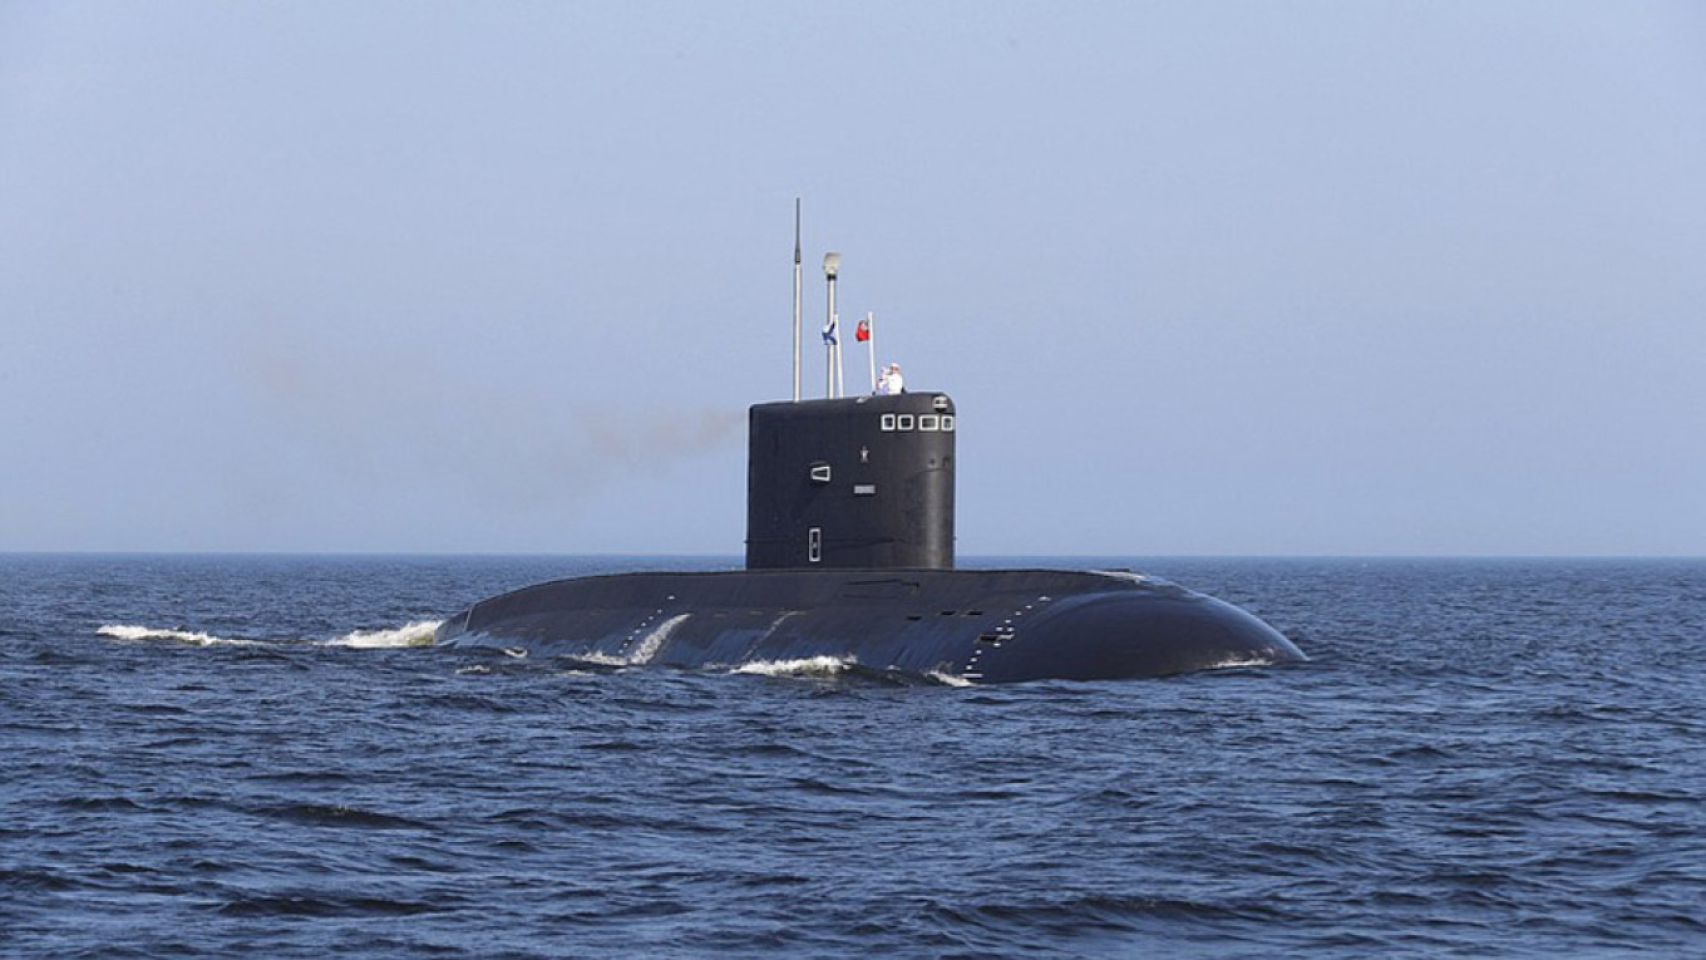 Submarino clase Kilo, misma a la que pertenecía el Rostov del Don